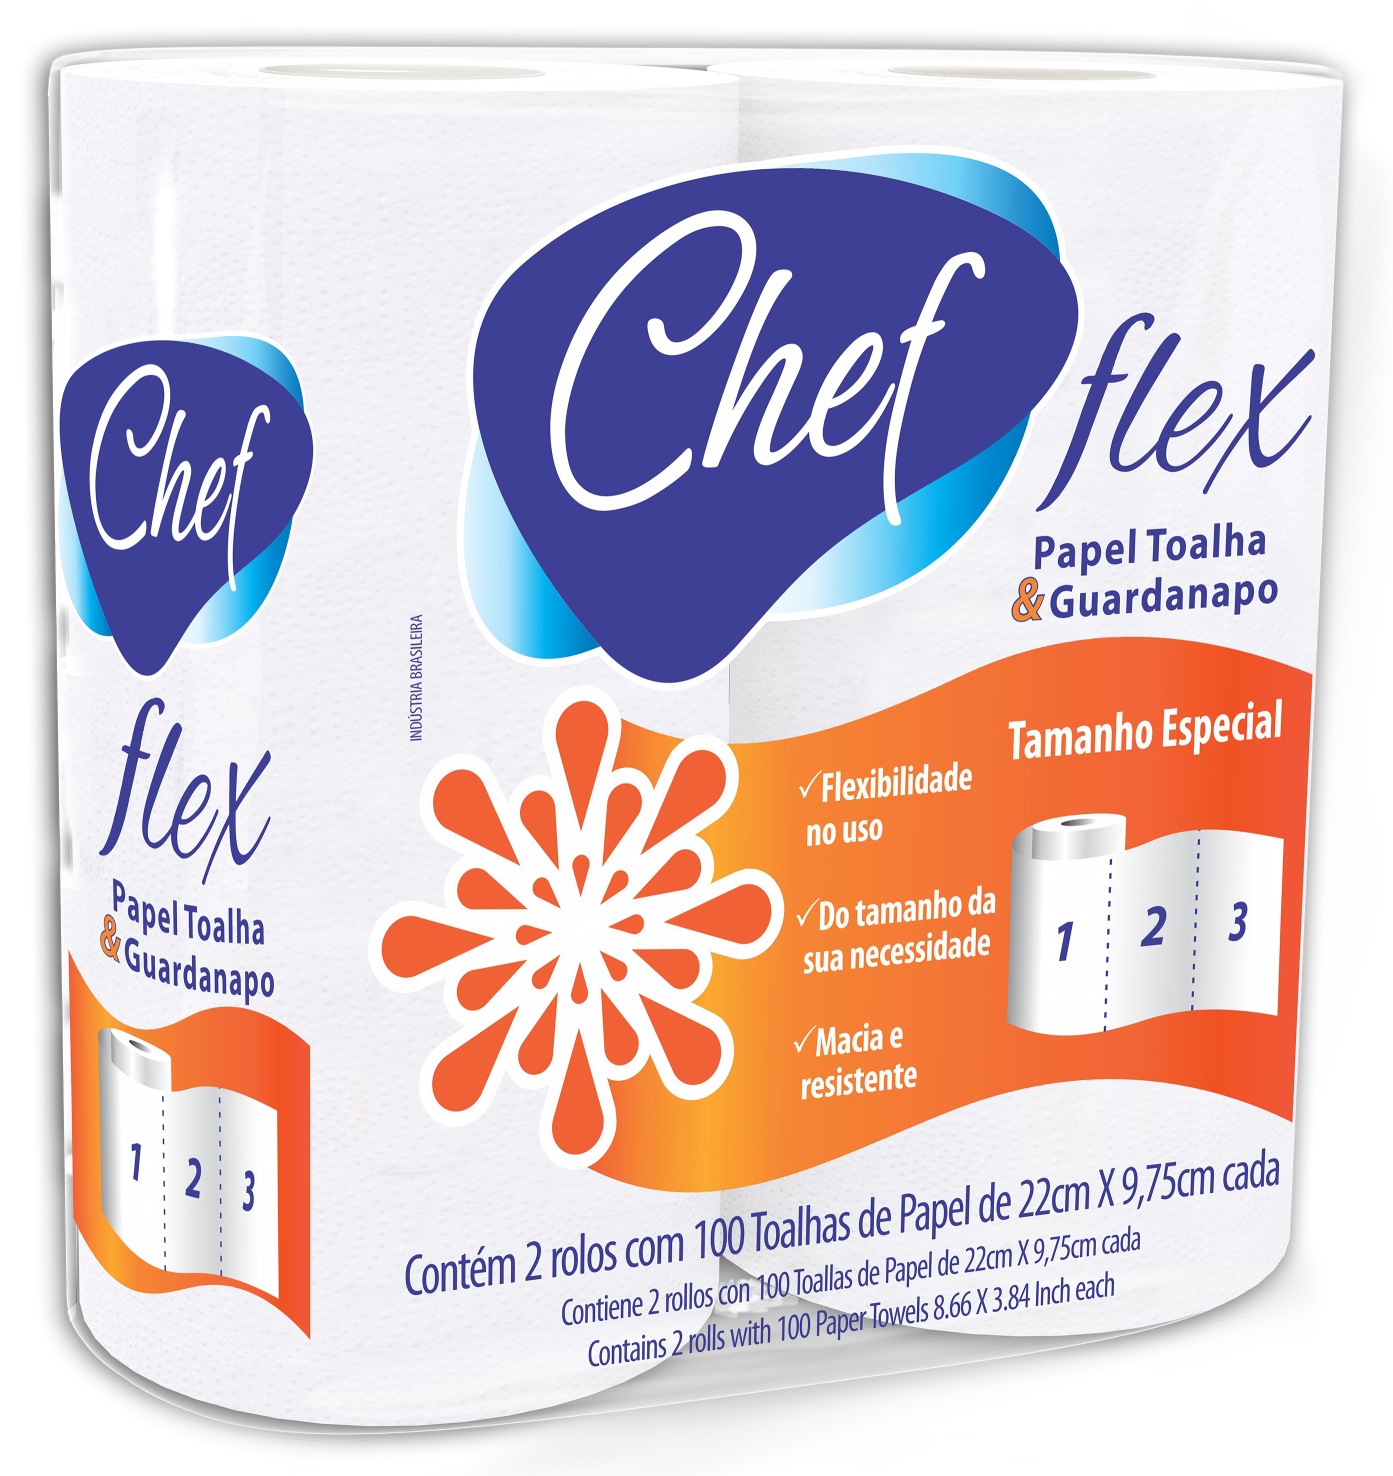 Toalha de papel, CHEF FLEX 100% celulose virgem.